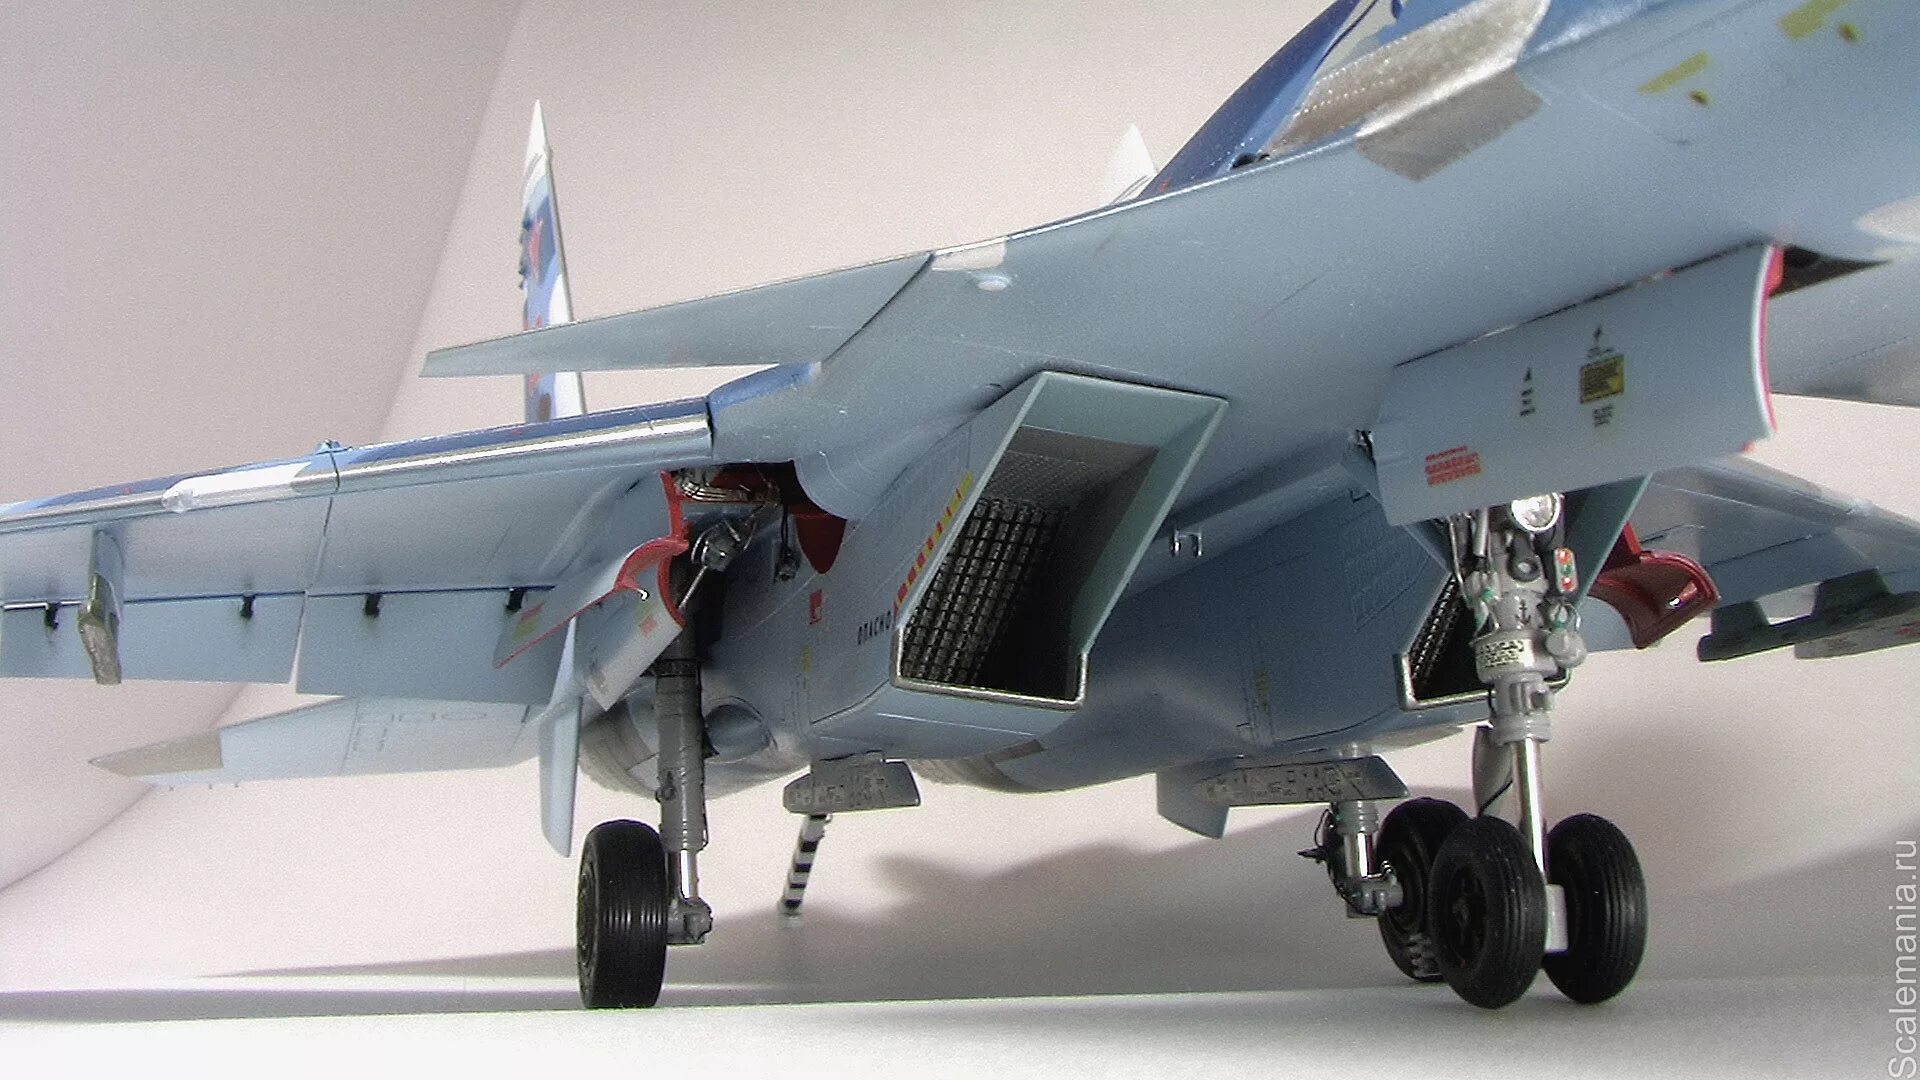 1 33 48. Су-27 шасси. Су-35 шасси. Су 27уб воздухозаборники. Су 30 см 1/48 GWH.